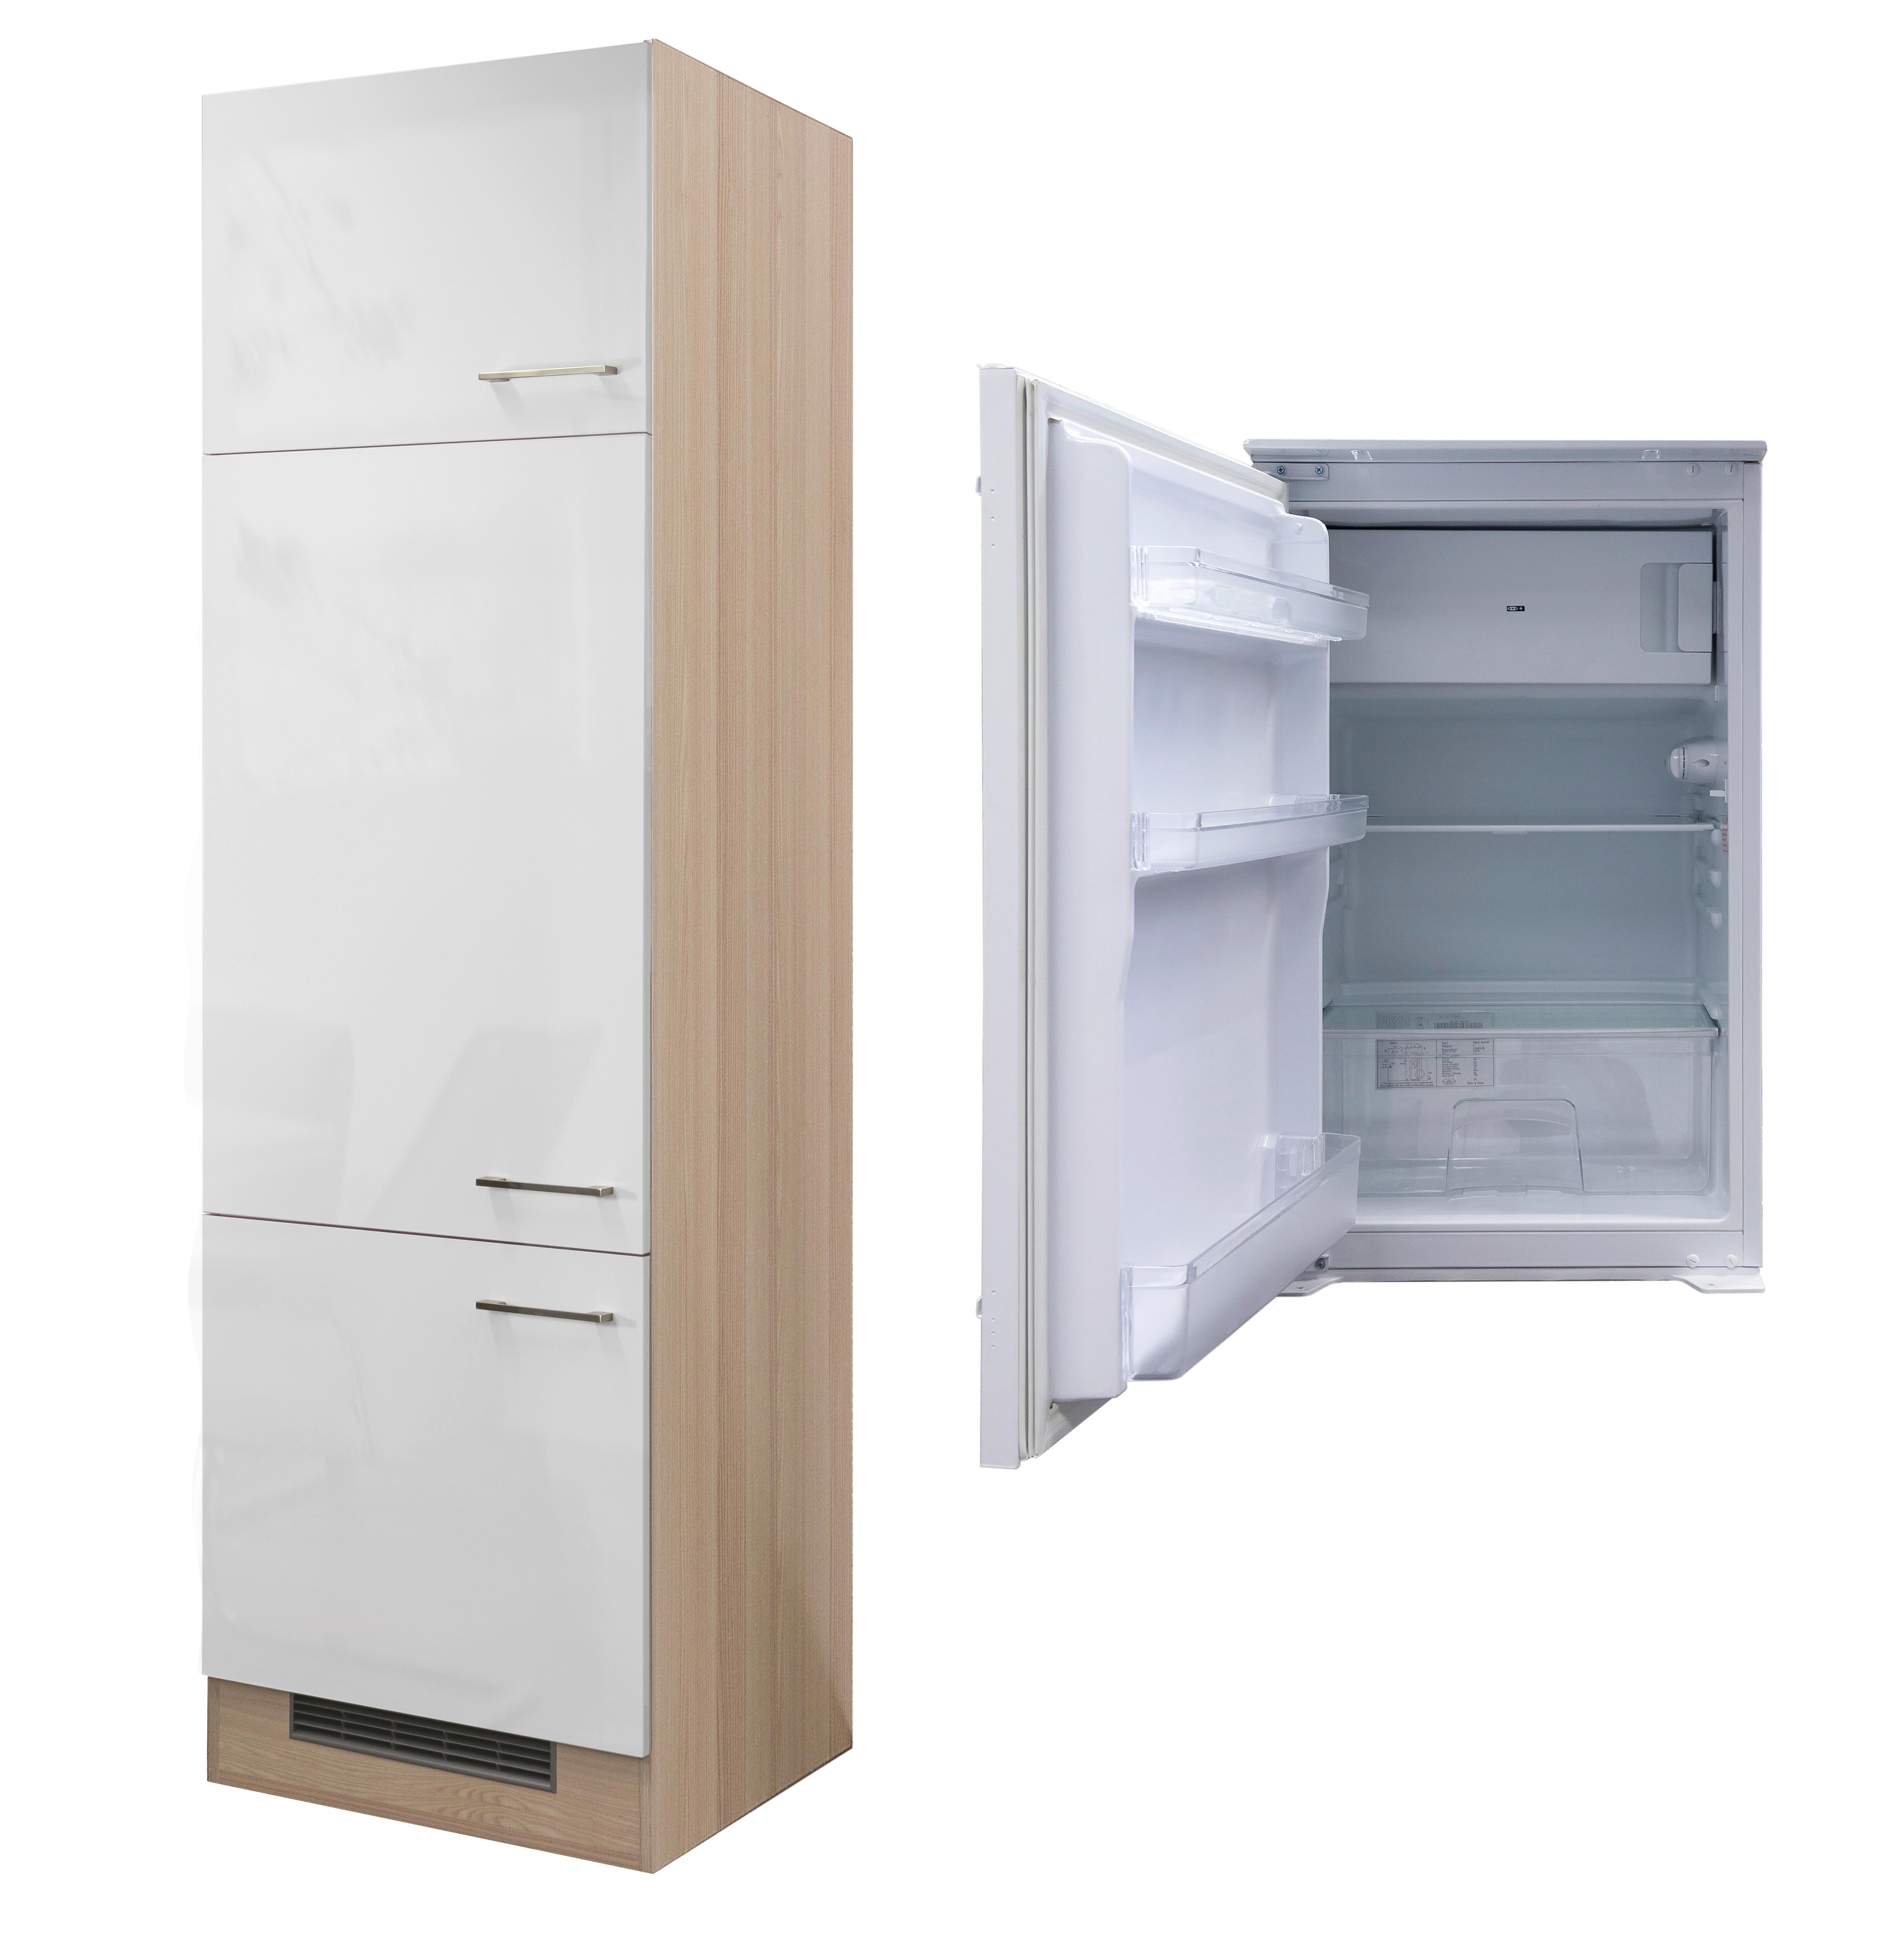 Dreitüriger Umbauschrank für einen Kühlschrank